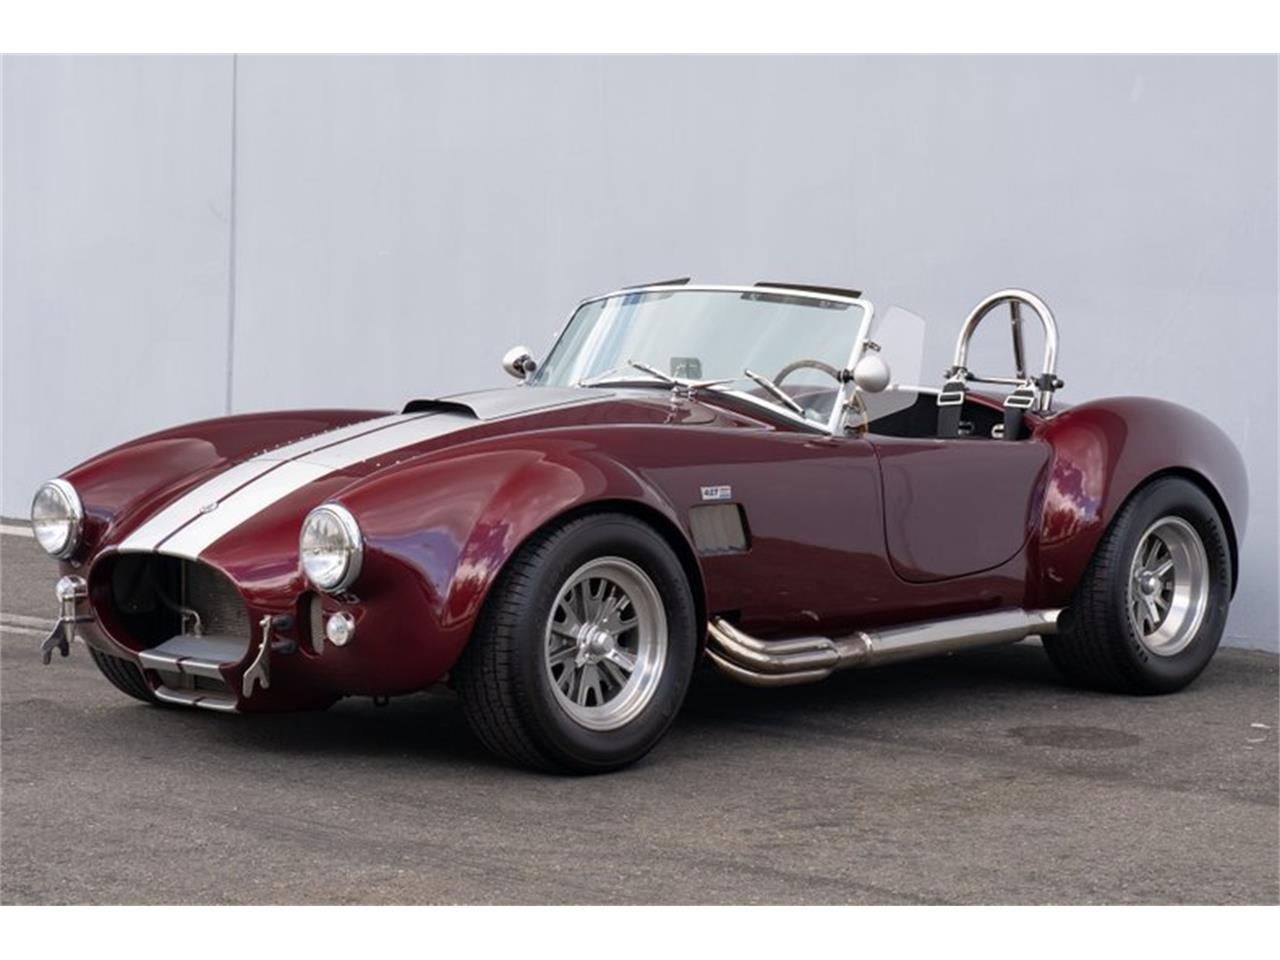 For Sale: 1965 Shelby Cobra in Irvine, California for sale in Irvine, CA